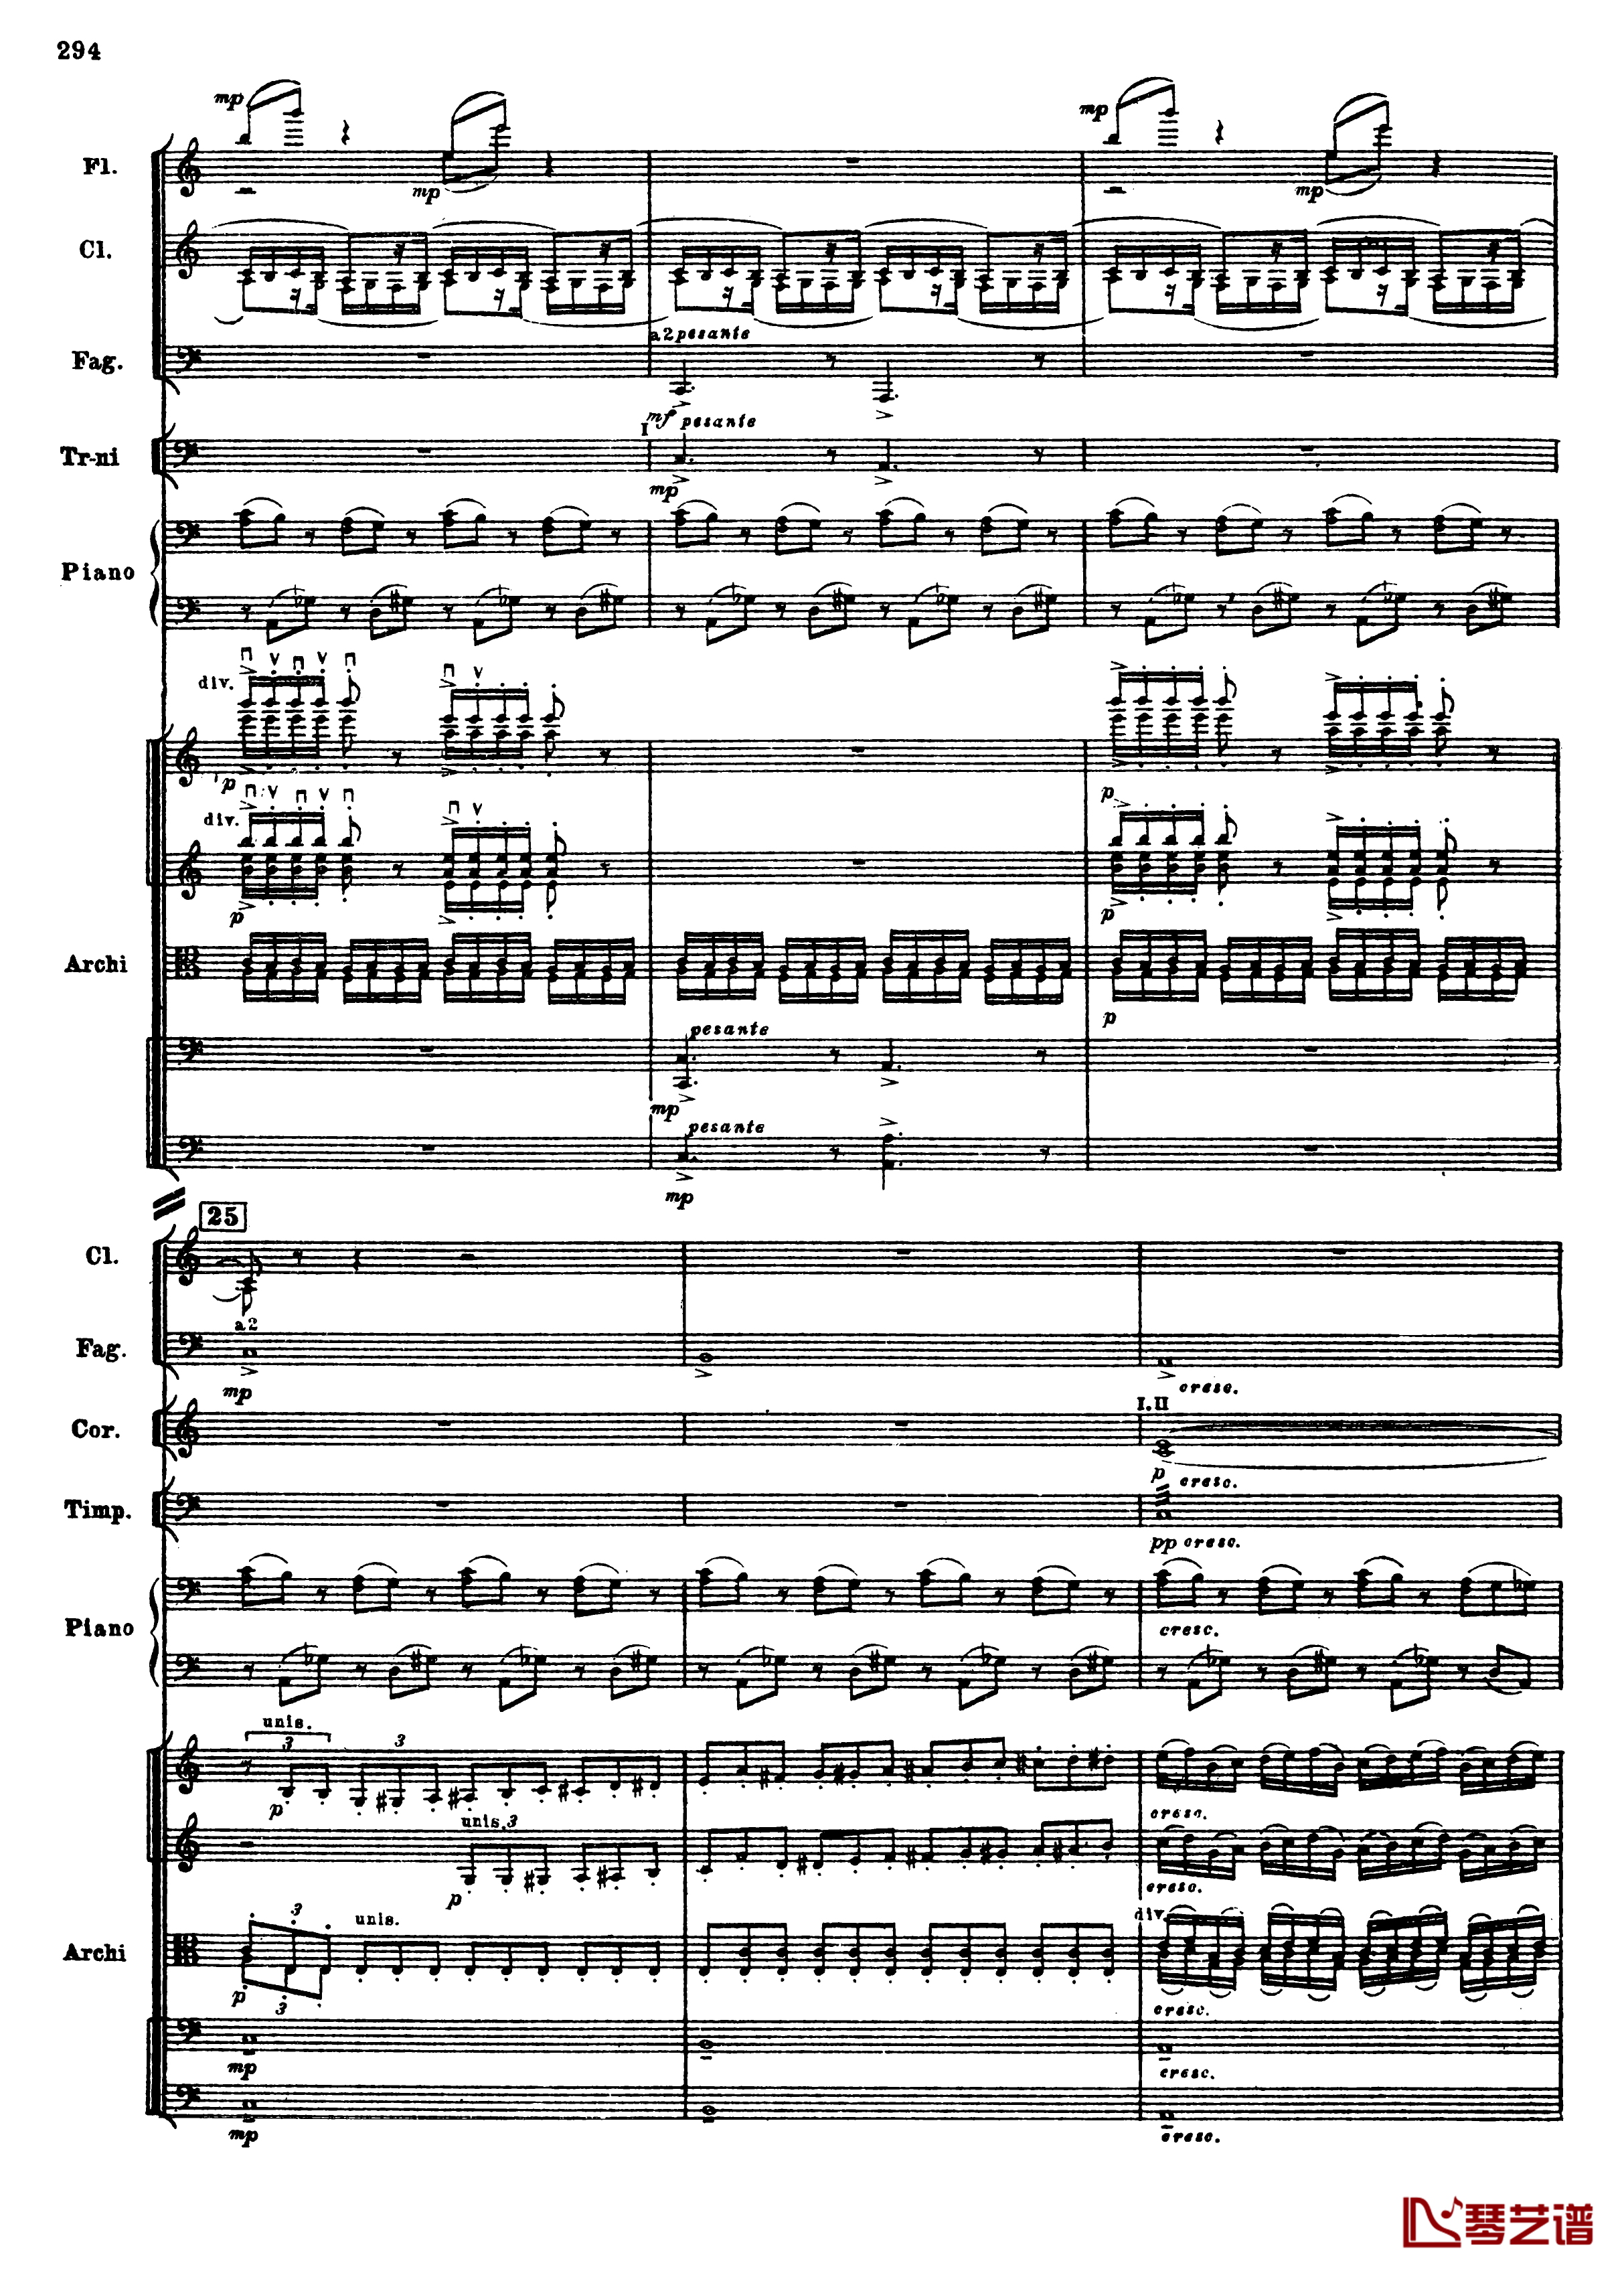 普罗科菲耶夫第三钢琴协奏曲钢琴谱-总谱-普罗科非耶夫26